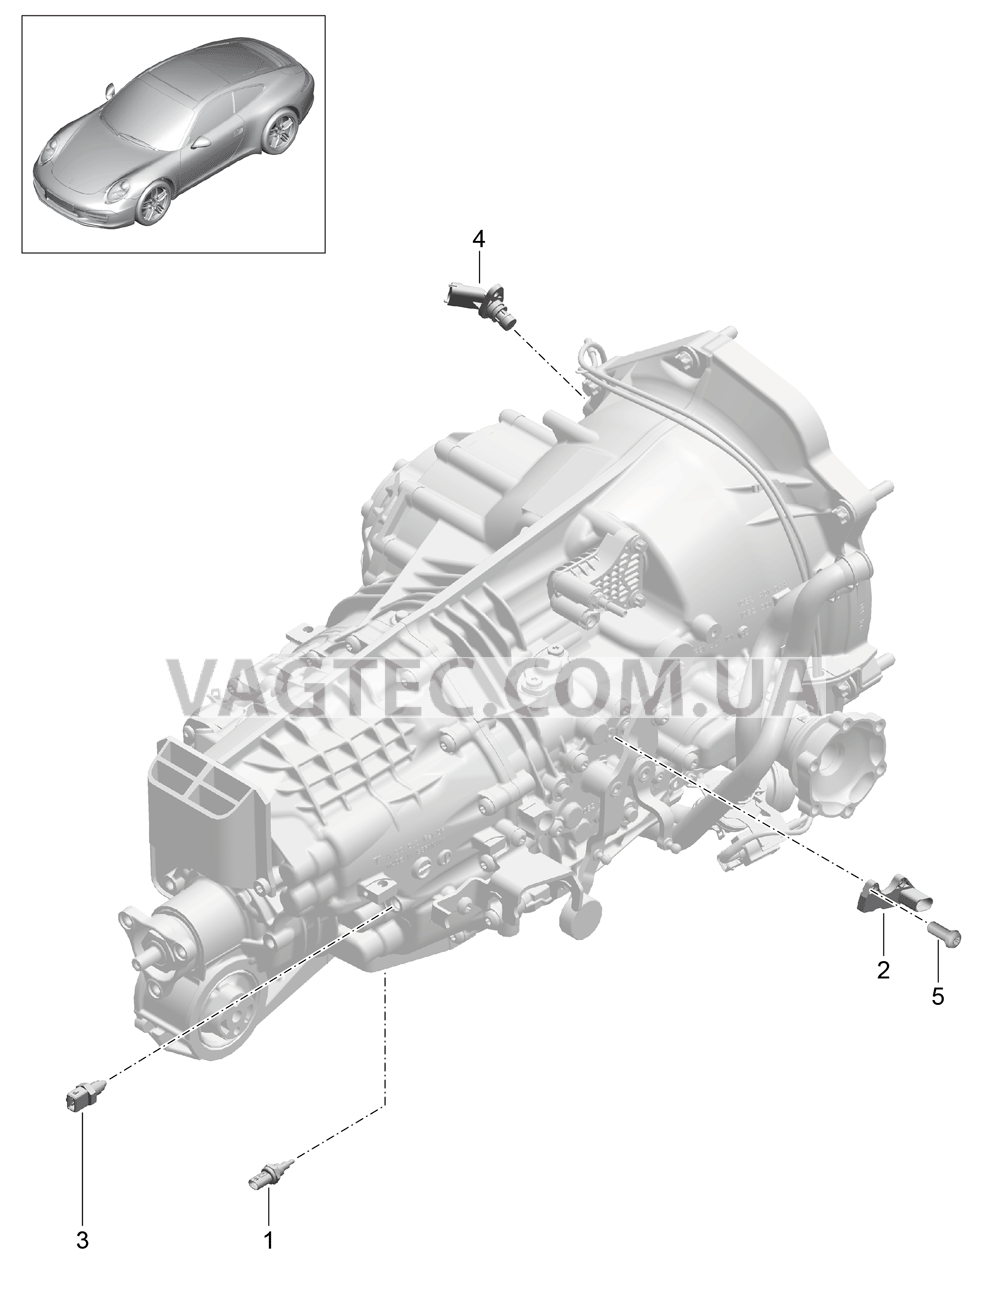 302-004 Мкпп, Отдельные детали
						
						G91.00/30 для PORSCHE 911.Carrera 2012-2016USA